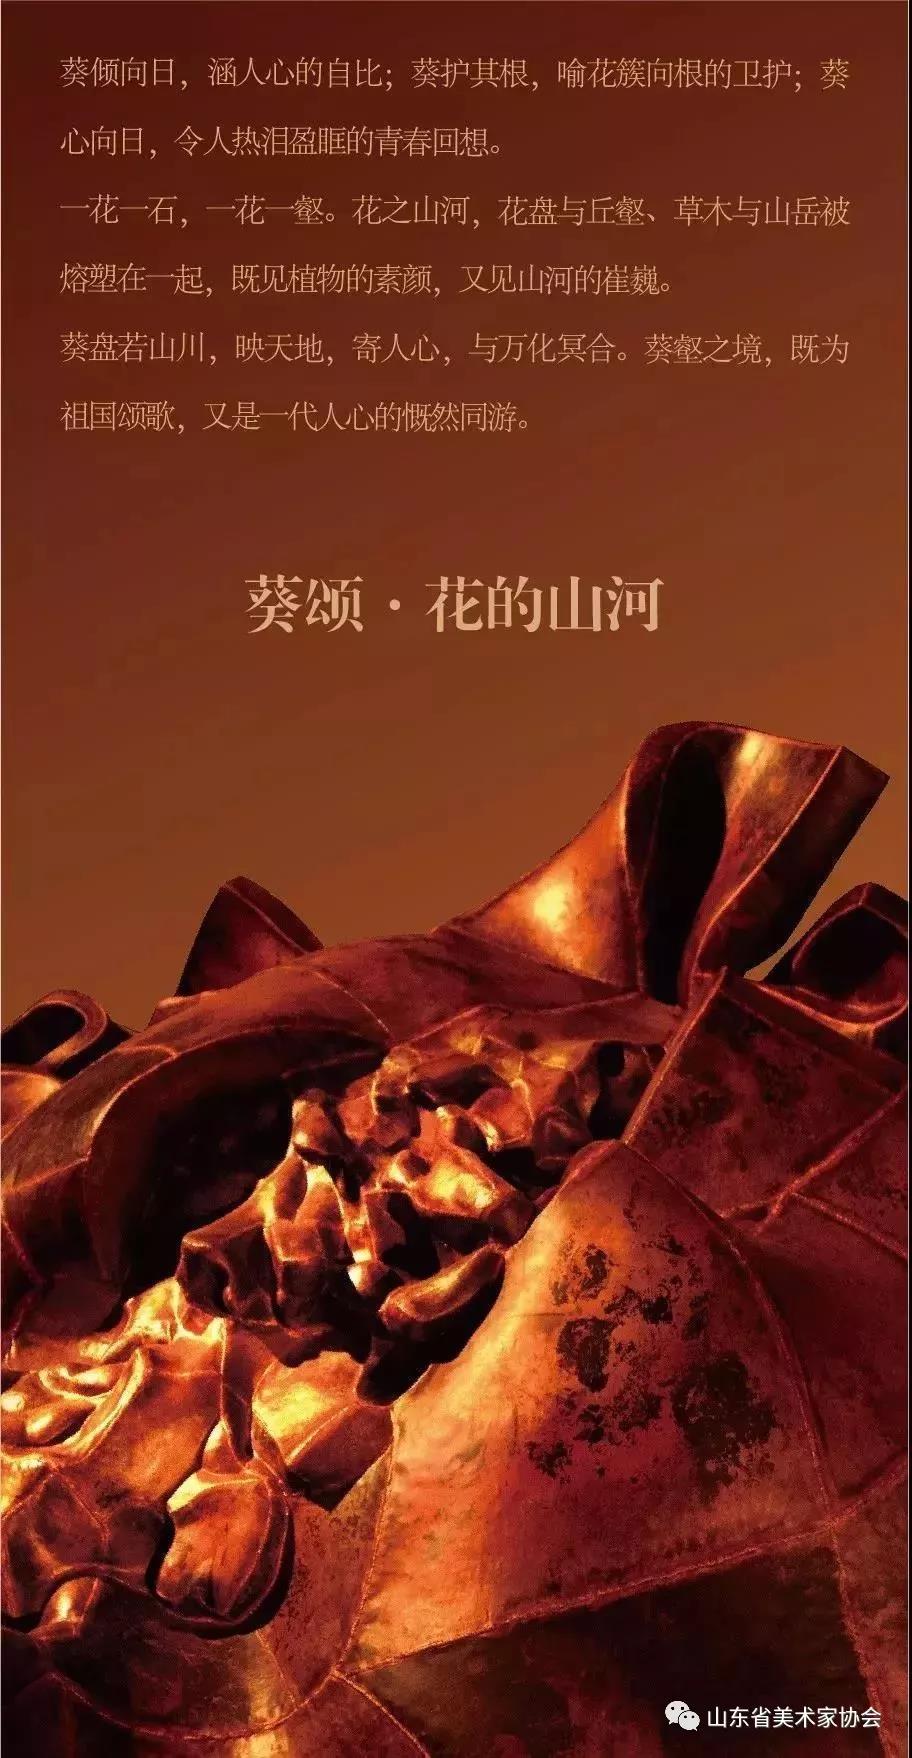 中国美术学院院长许江“葵颂——许江艺术展”12月21日在山东美术馆开幕